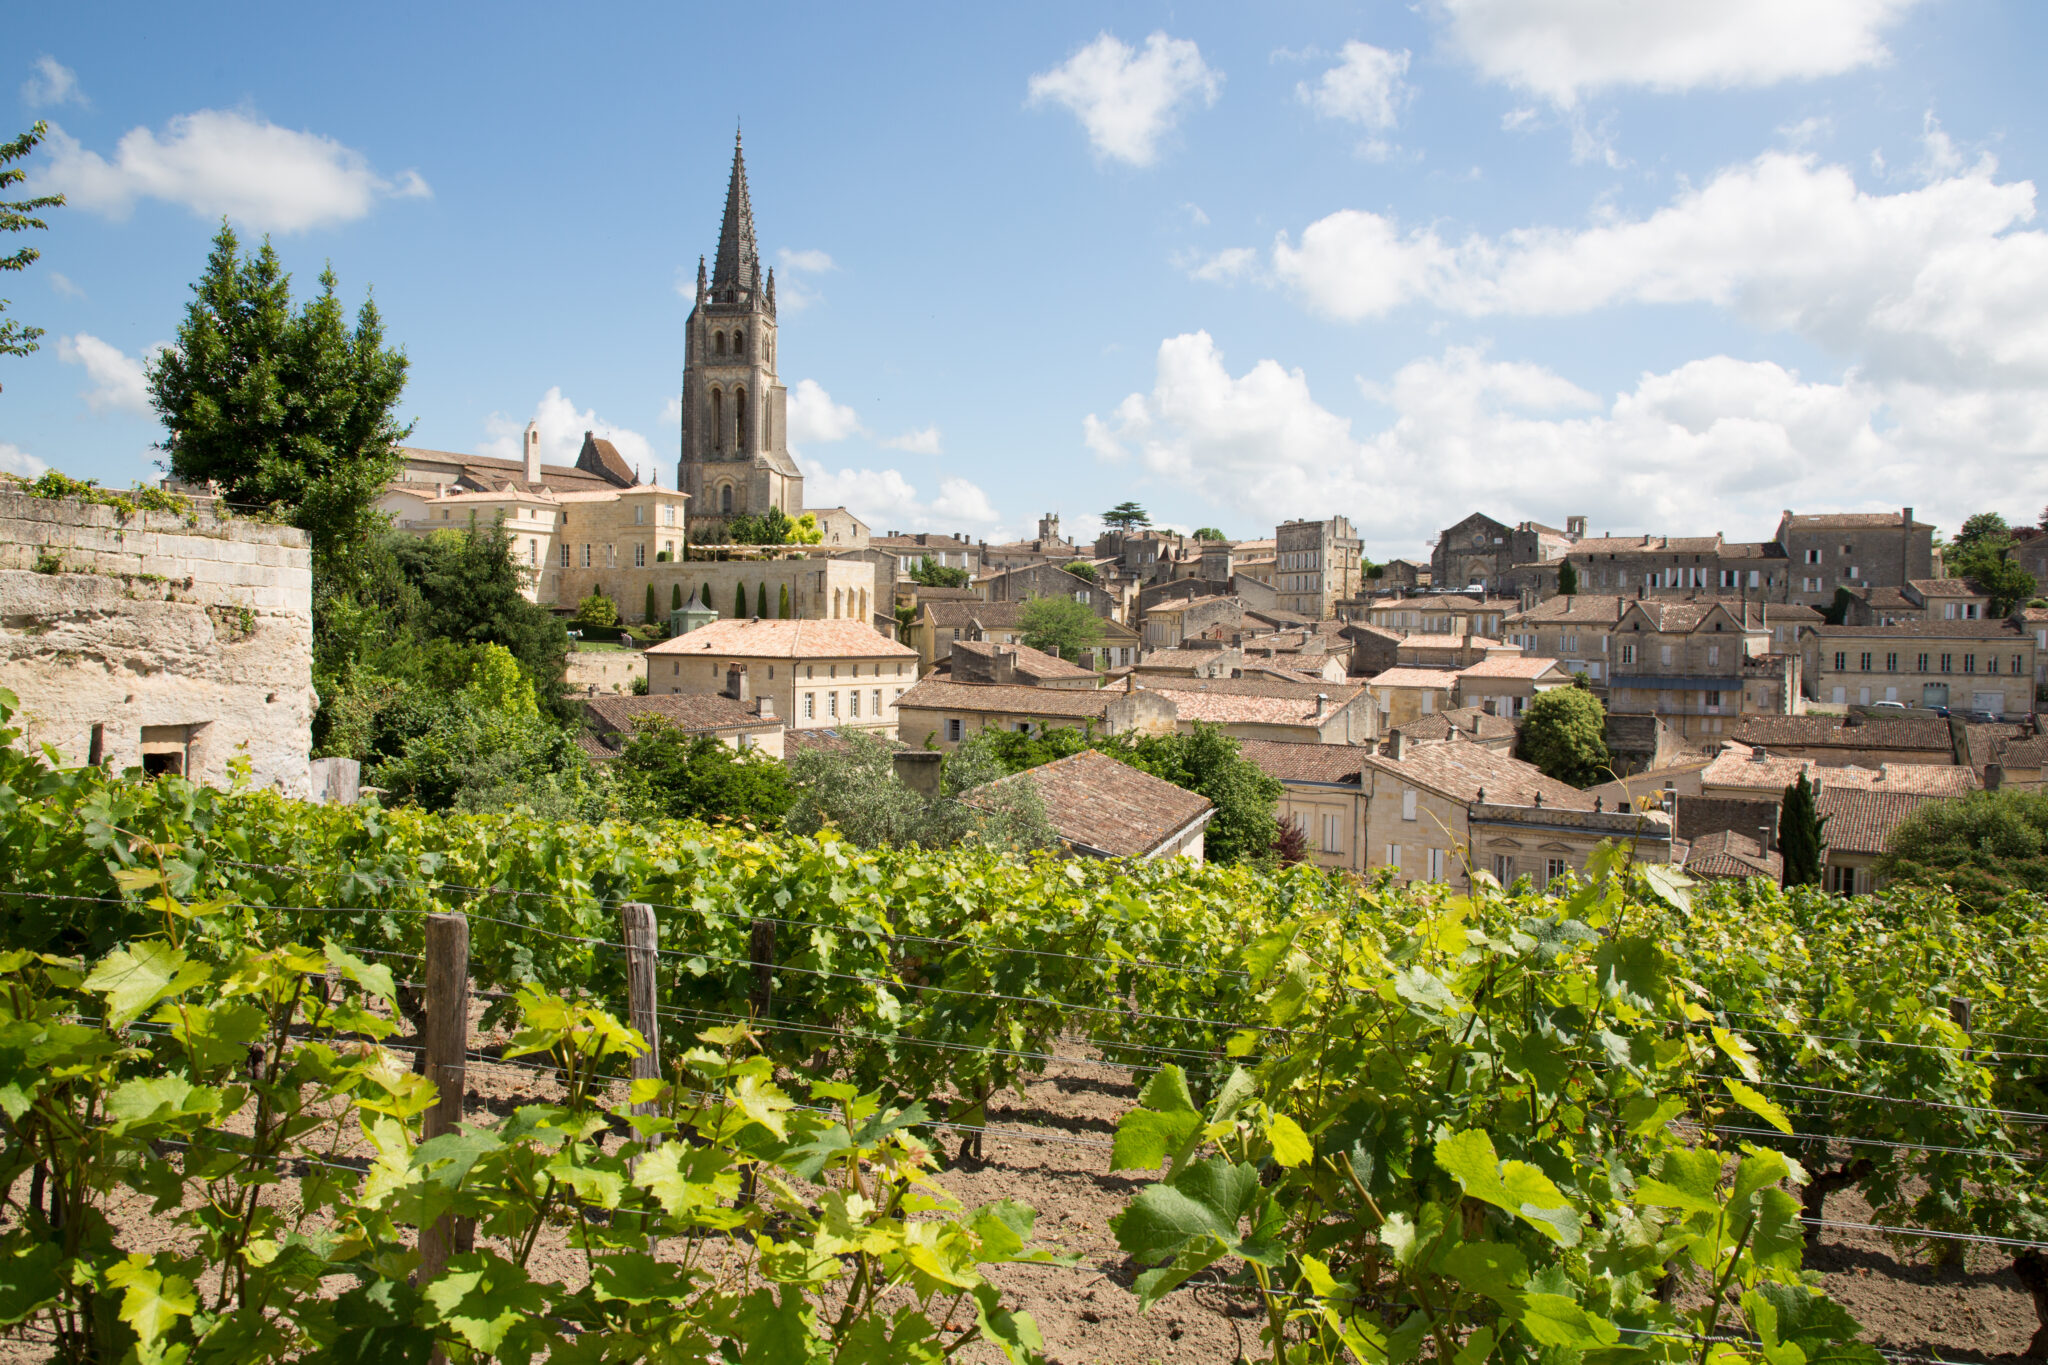 Saint-Emilion village and its vineyards in Bordeaux region, France